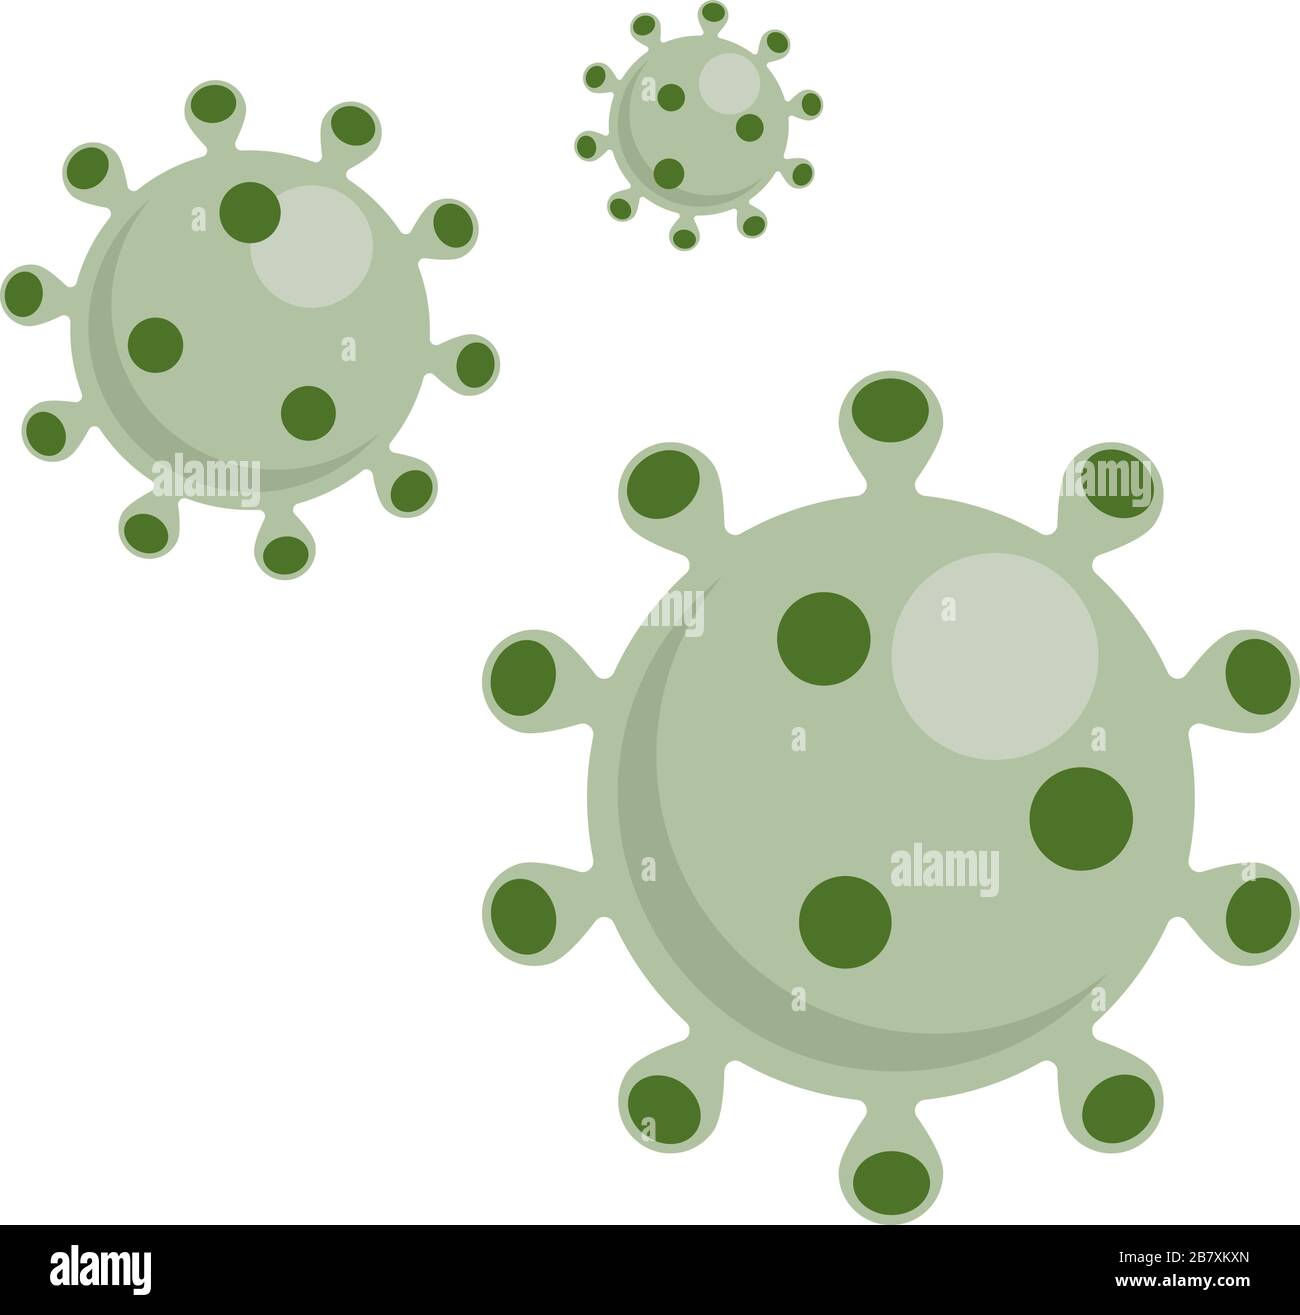 Simbolo del virus coronavirus COVID-19. Nuovo focolaio di coronavirus. Allarme pandemico globale. Epidemia di Covid-19. Illustrazione del vettore isolato. Illustrazione Vettoriale